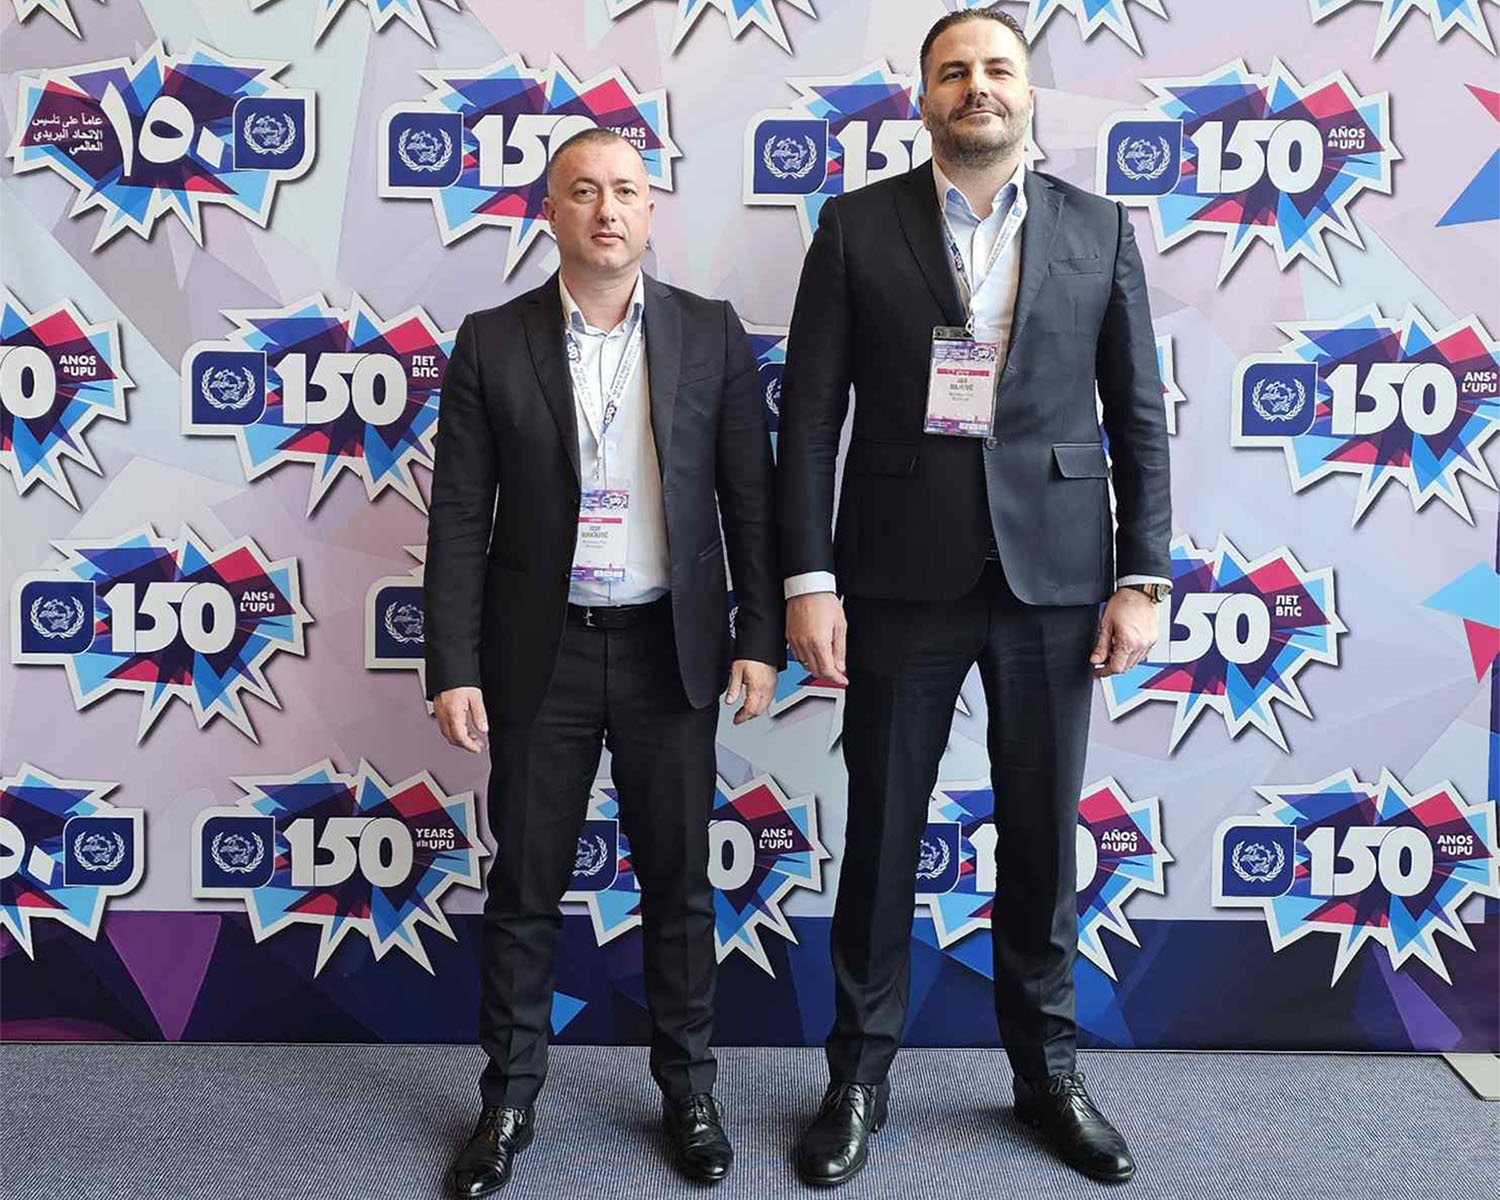 Bulatović i Đurašković na događaju povodom 150 godina postojanja Svjetskog poštanskog saveza